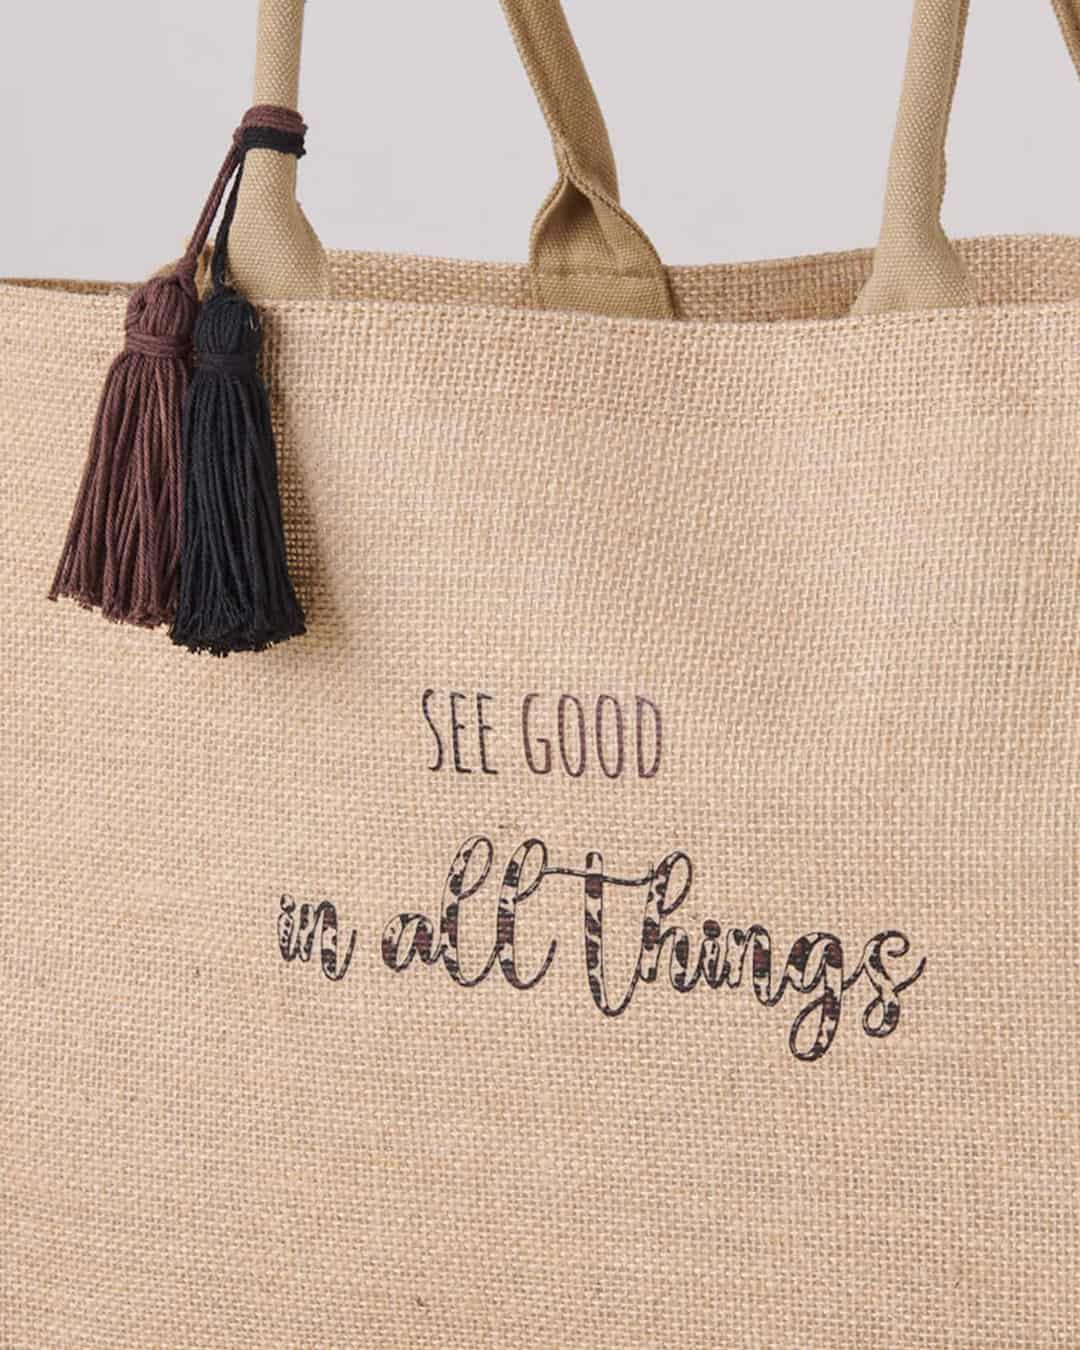 Dettaglio borsa da mare con scritta "See Good in all things"